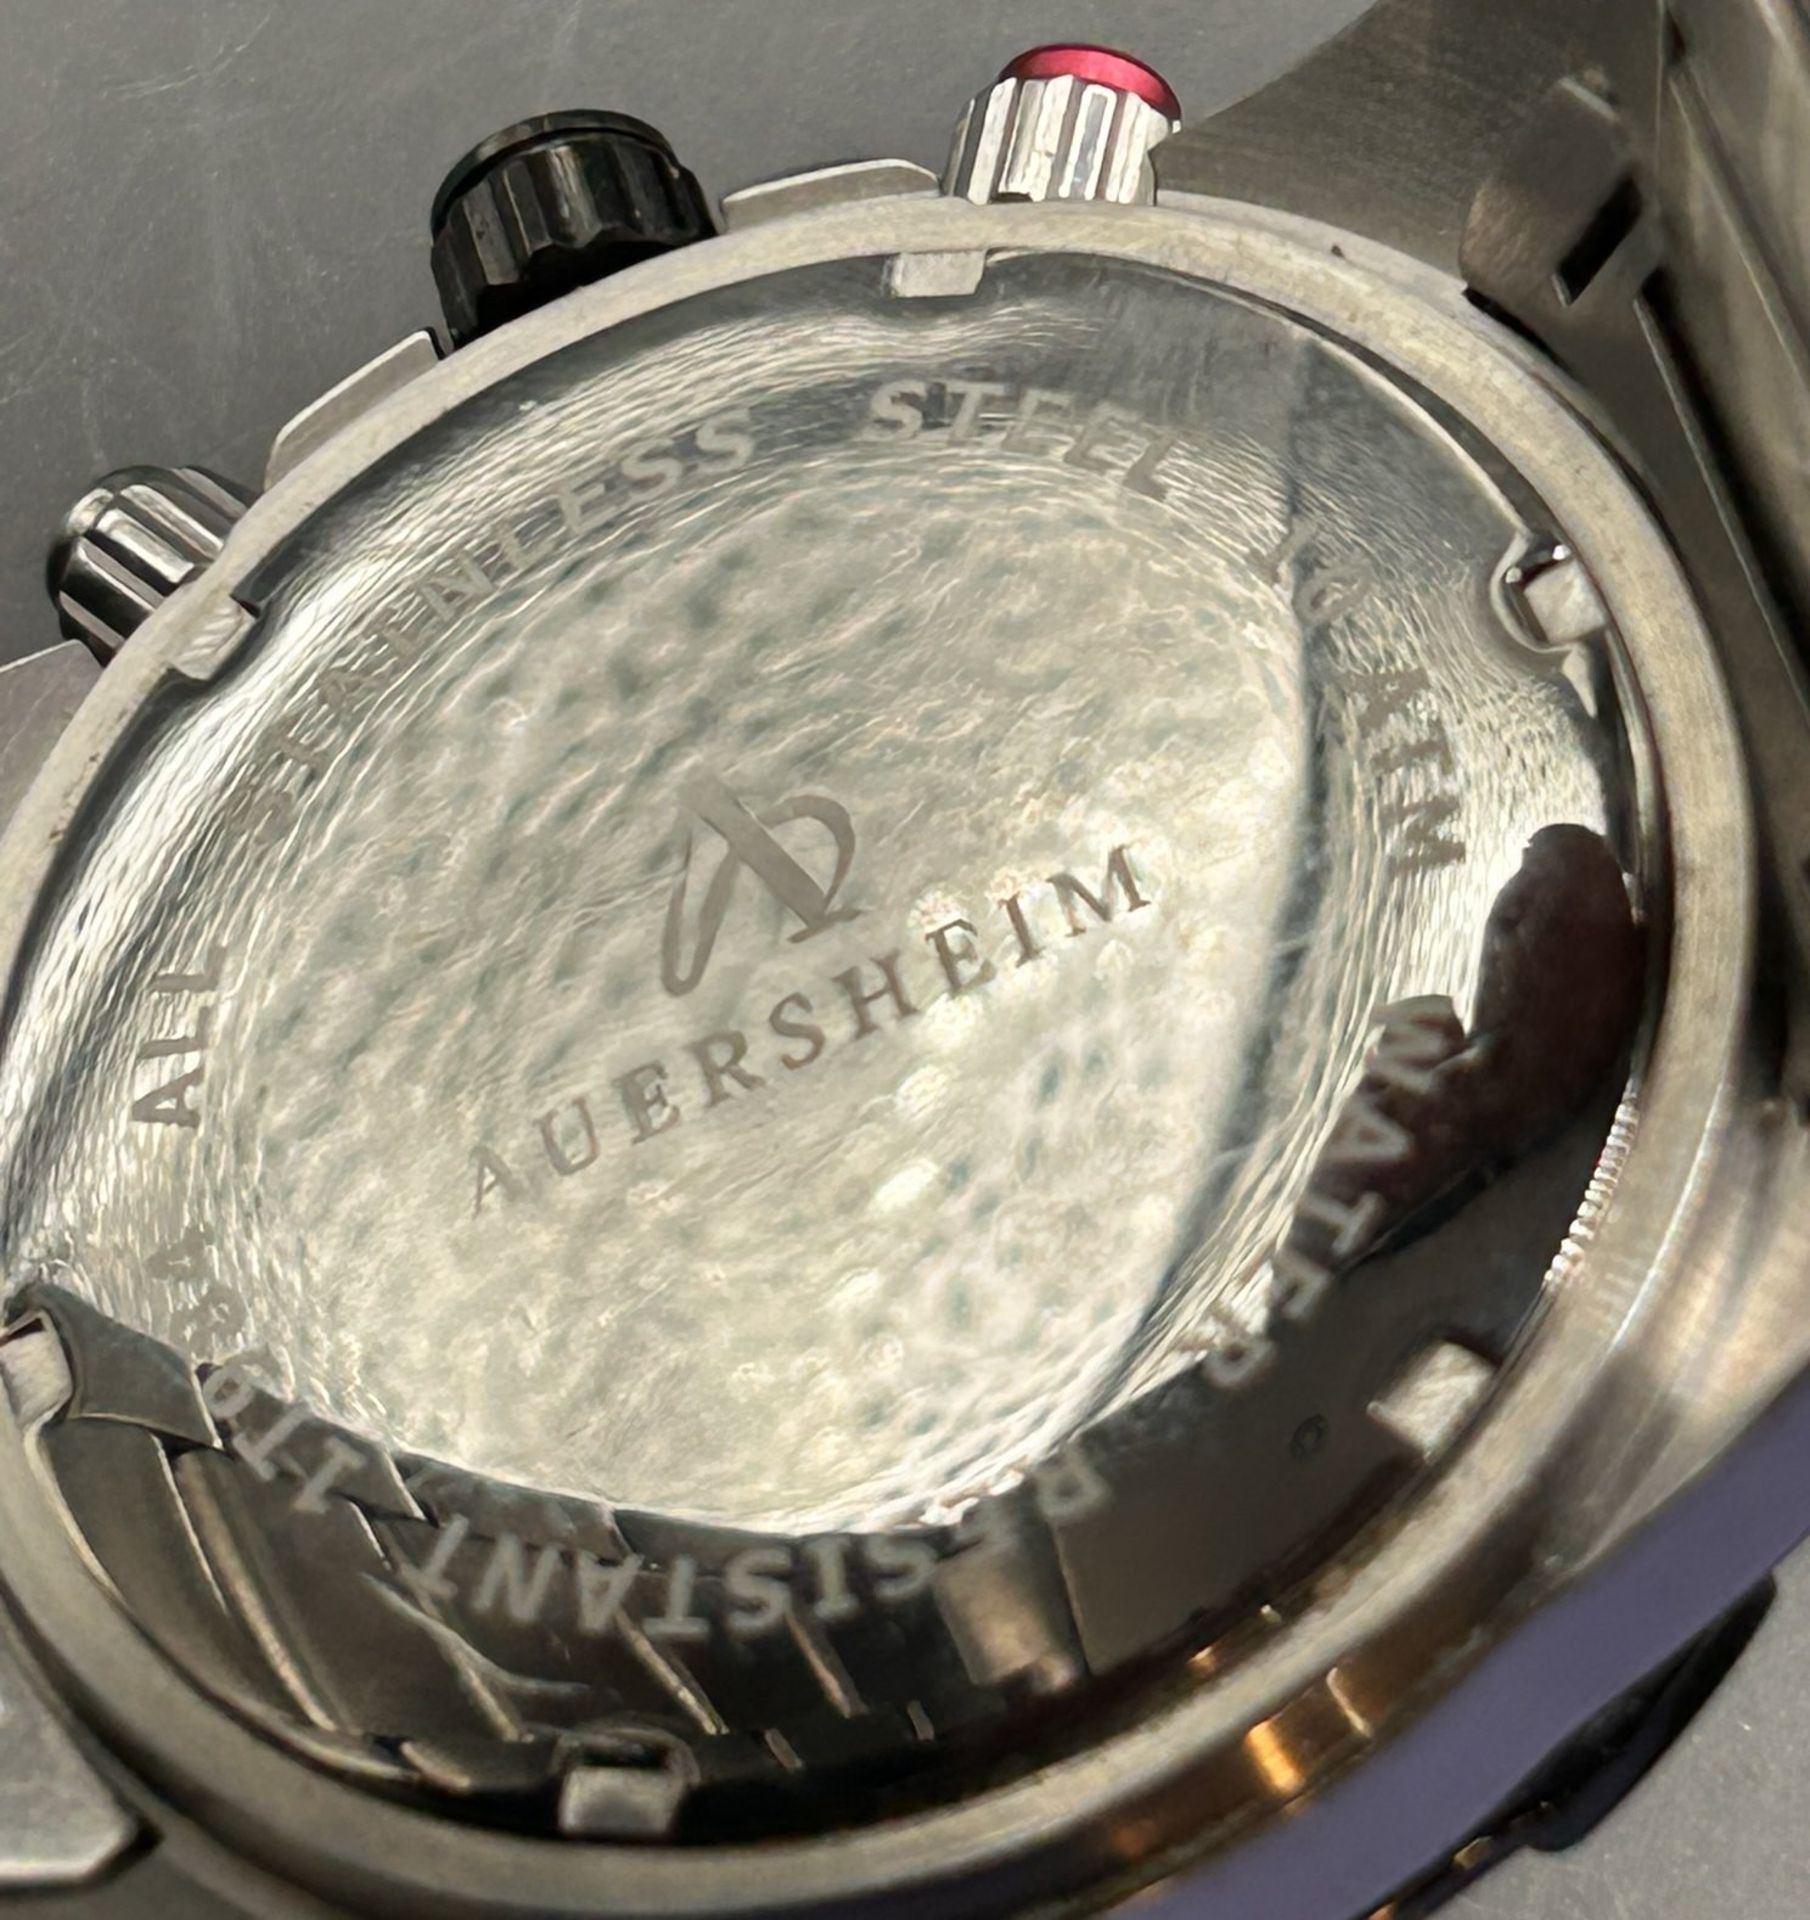 Quartz Armbanduhr Auersheim Chronometer 1T984, orig. Band, optisch gut erhalten, nicht überprüft - Image 3 of 4